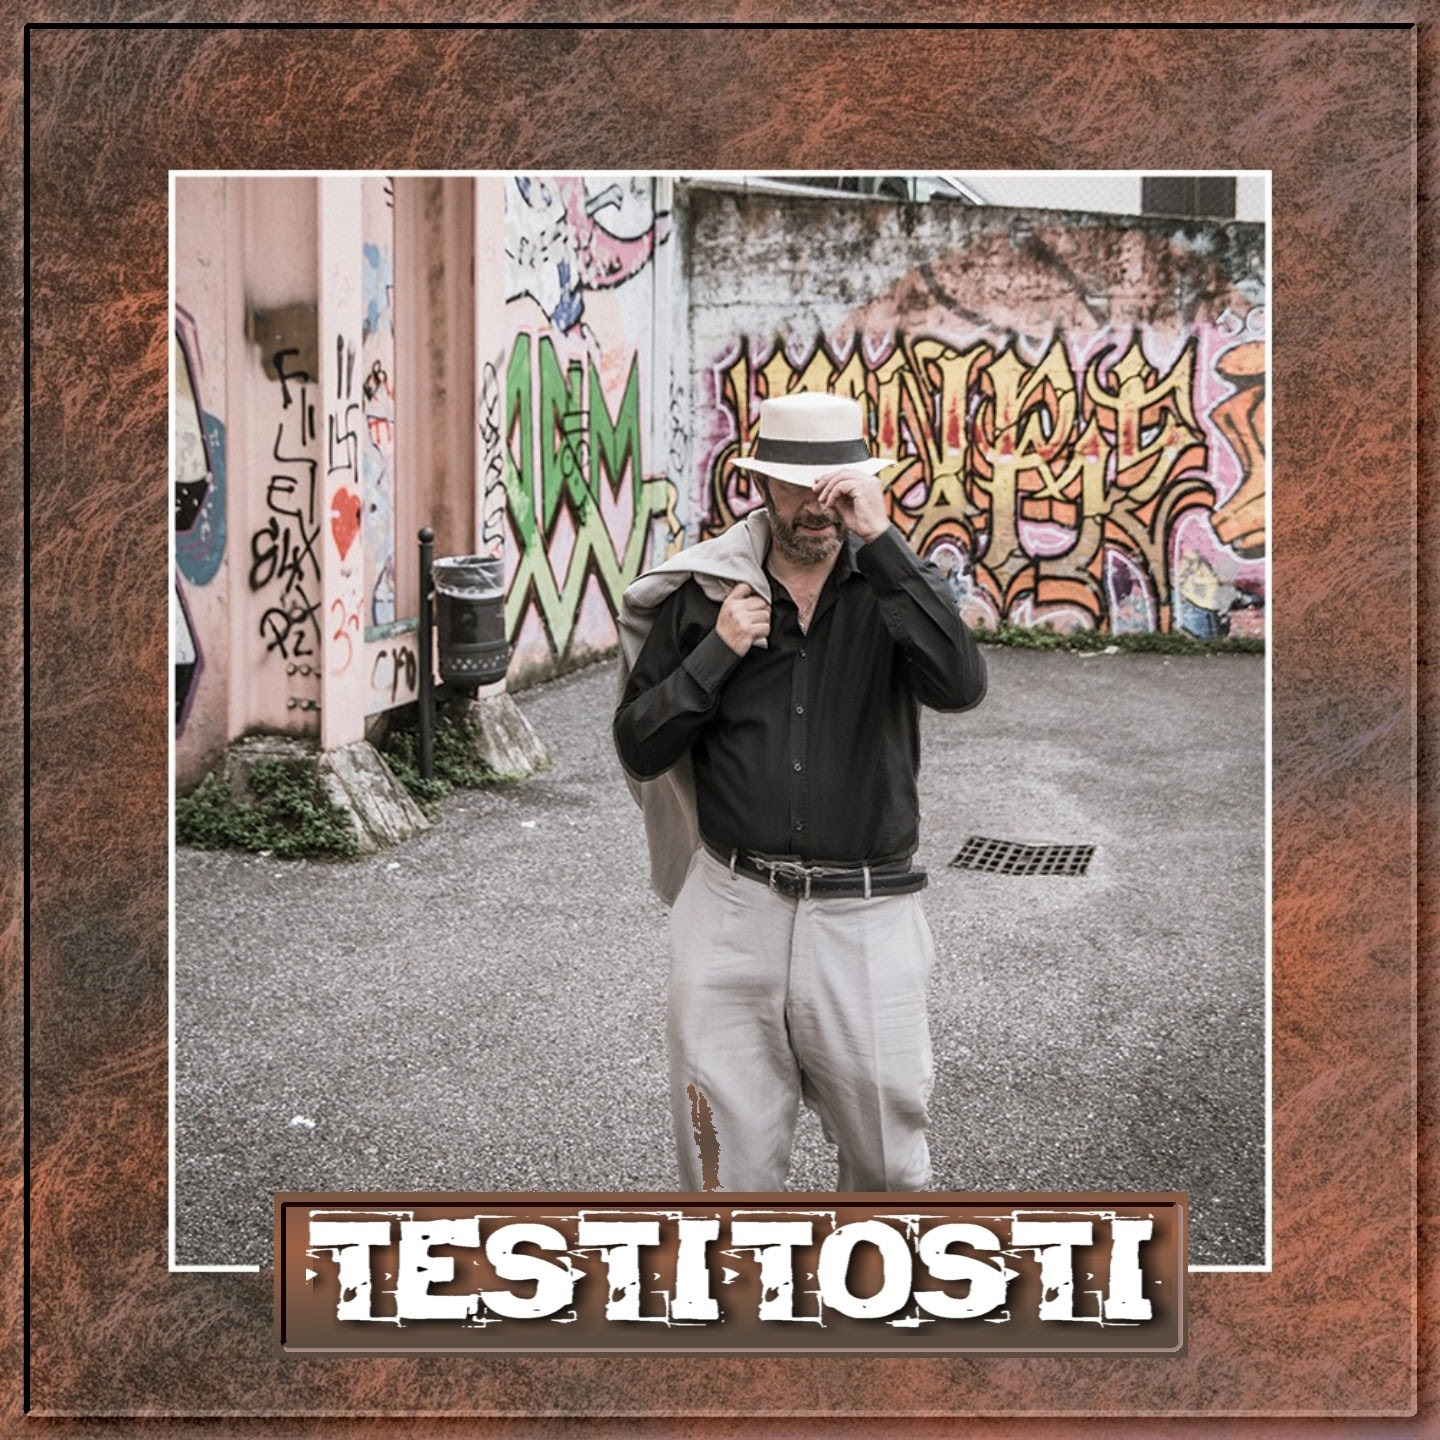 Dal 3 marzo disponibile in rotazione radiofonica “Testi Tosti”, il nuovo singolo di Testitosti